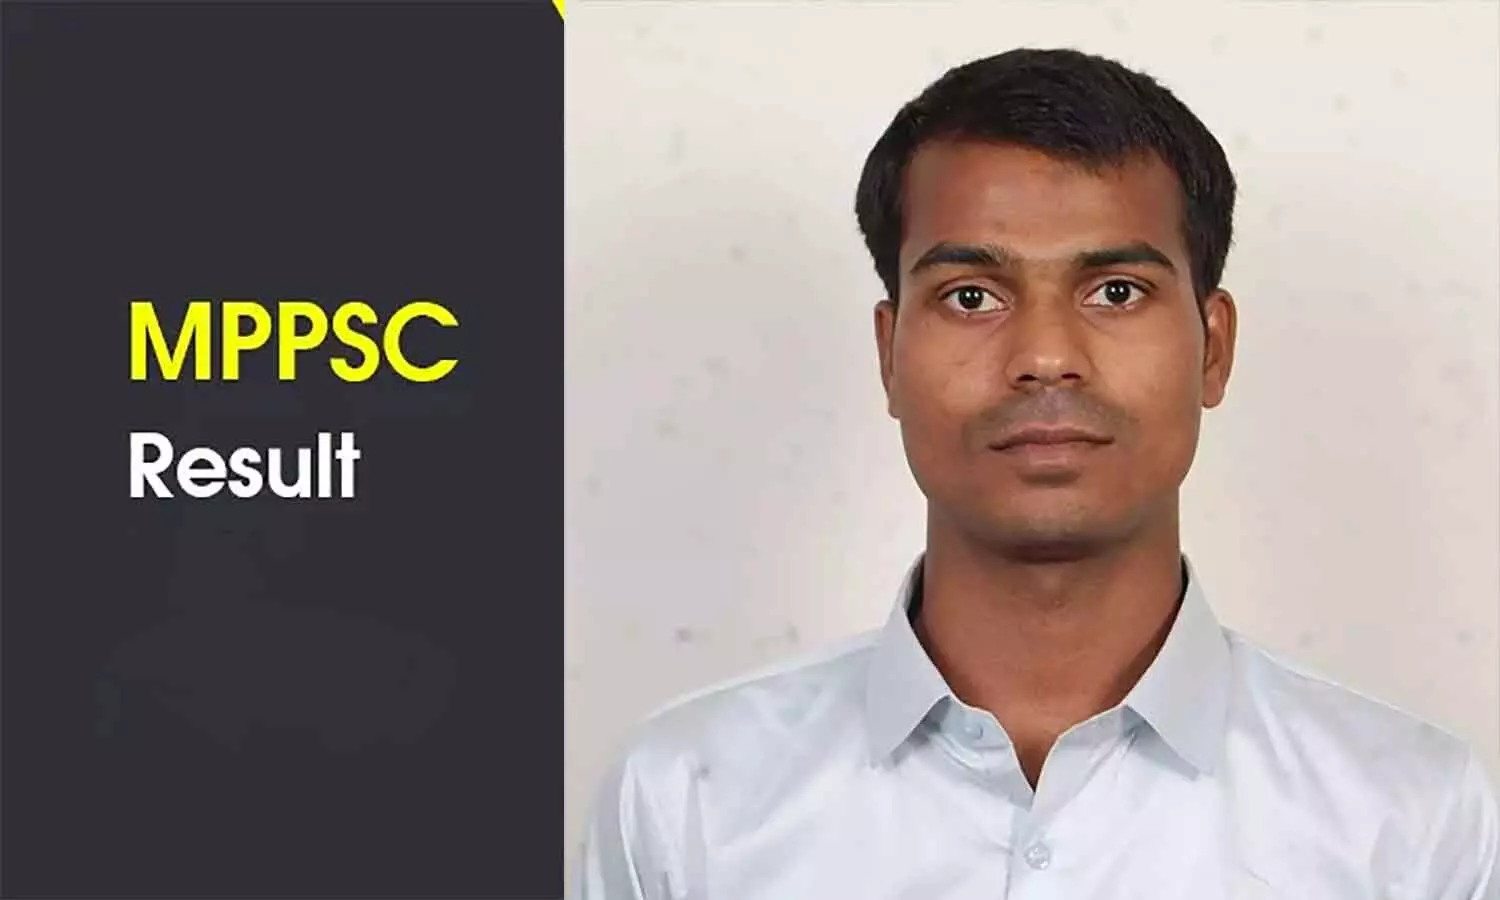 MPPSC Result: सीधी के नंदन तिवारी ने एमपीपीएससी में हासिल की 9वीं रैंक